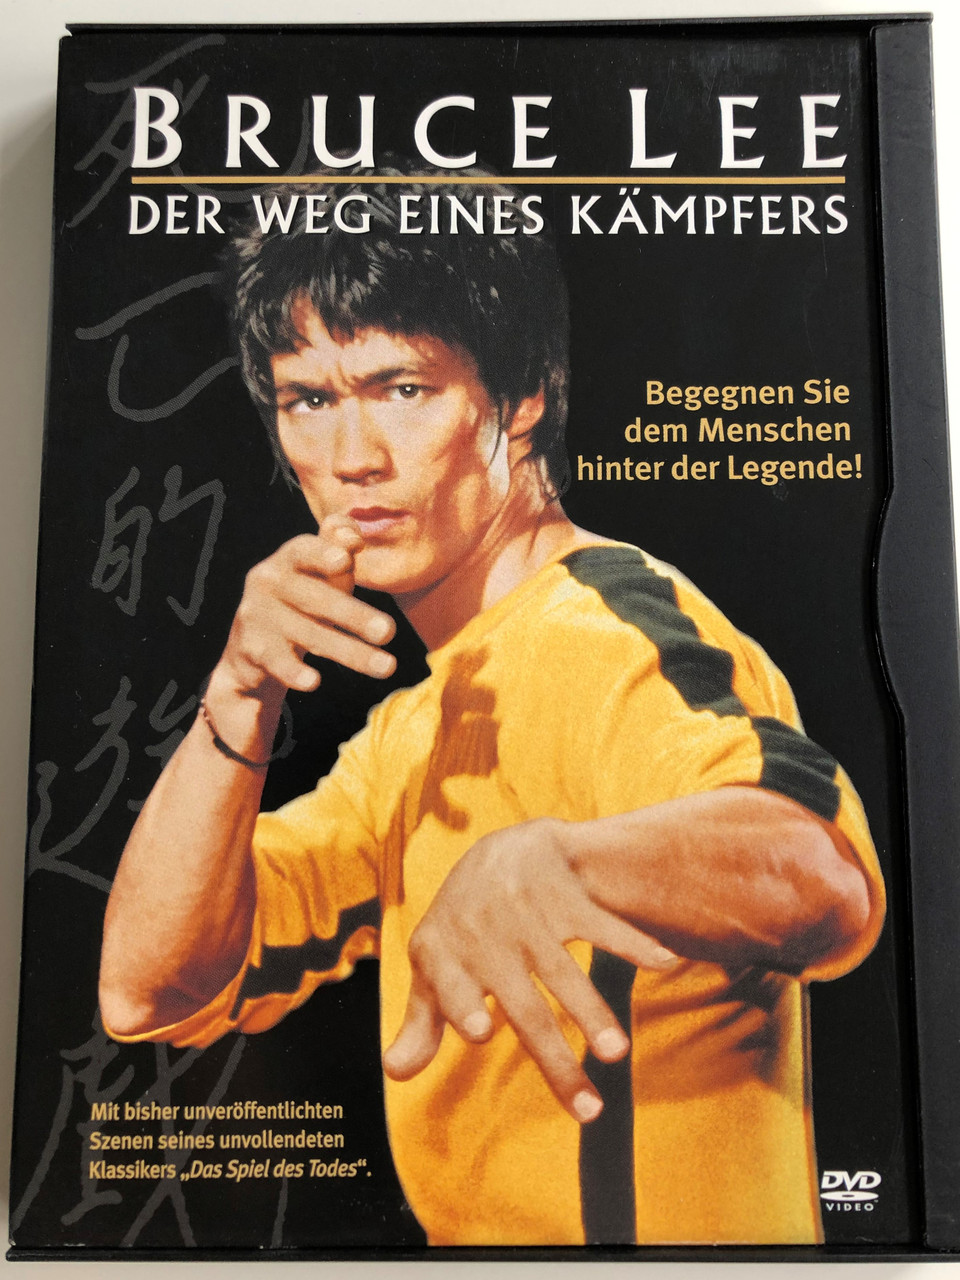 A Warrior's Journey - Bruce Lee DVD 2000 Der Weg eines Kämpfers / Directed  by John Little / Starring: Bruce Lee, Kareem Abdul-Jabbar -  bibleinmylanguage